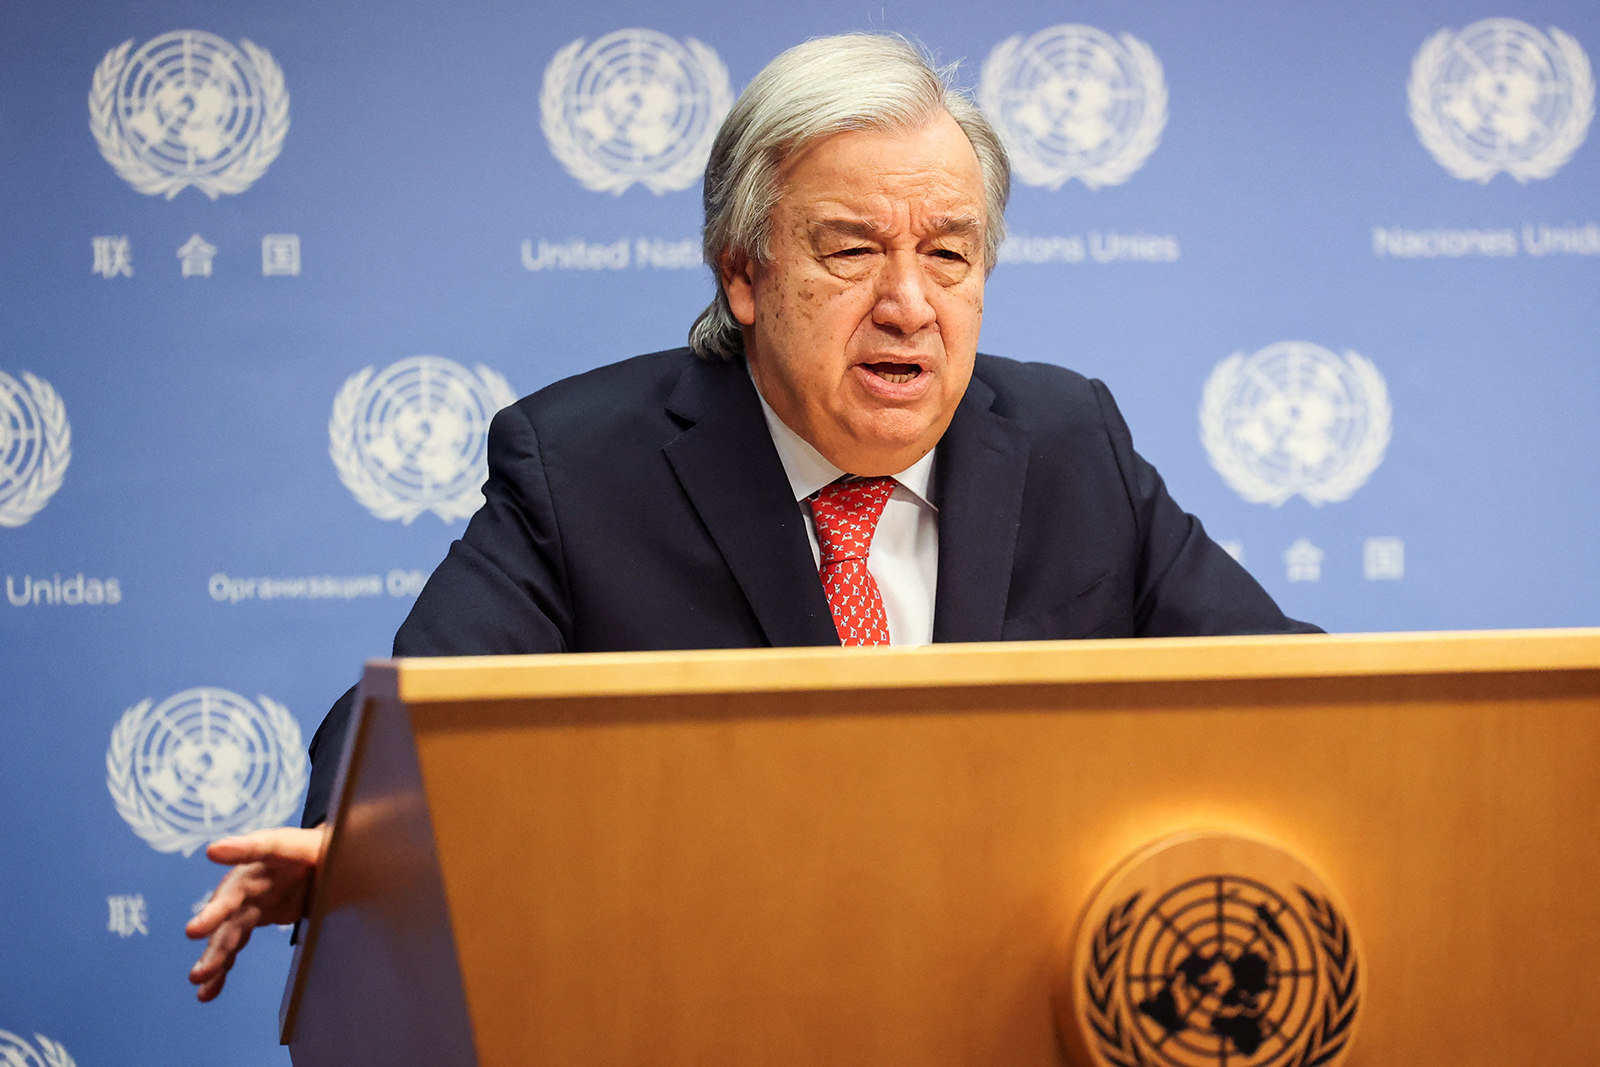 El secretario general de la ONU, António Guterres, habla durante una conferencia de prensa en la ciudad de Nueva York el 6 de noviembre. (Crédito: Caitlin Ochs/Reuters)